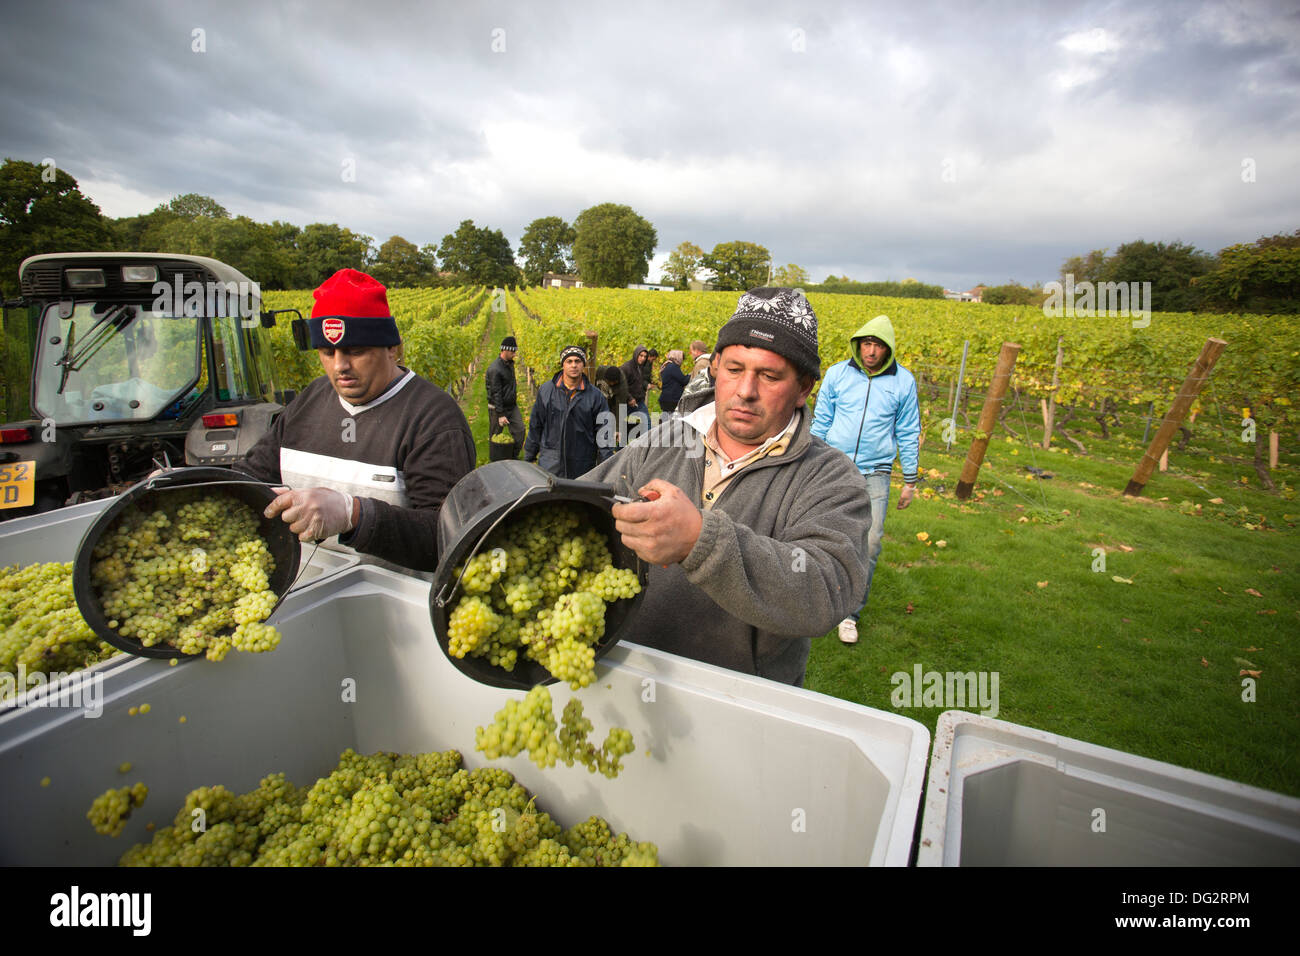 Rumänische Obstpflücker in den Weinbergen auf Englisch wine Maker Kapelle, Weine, Tenterden, Kent, England, UK Stockfoto